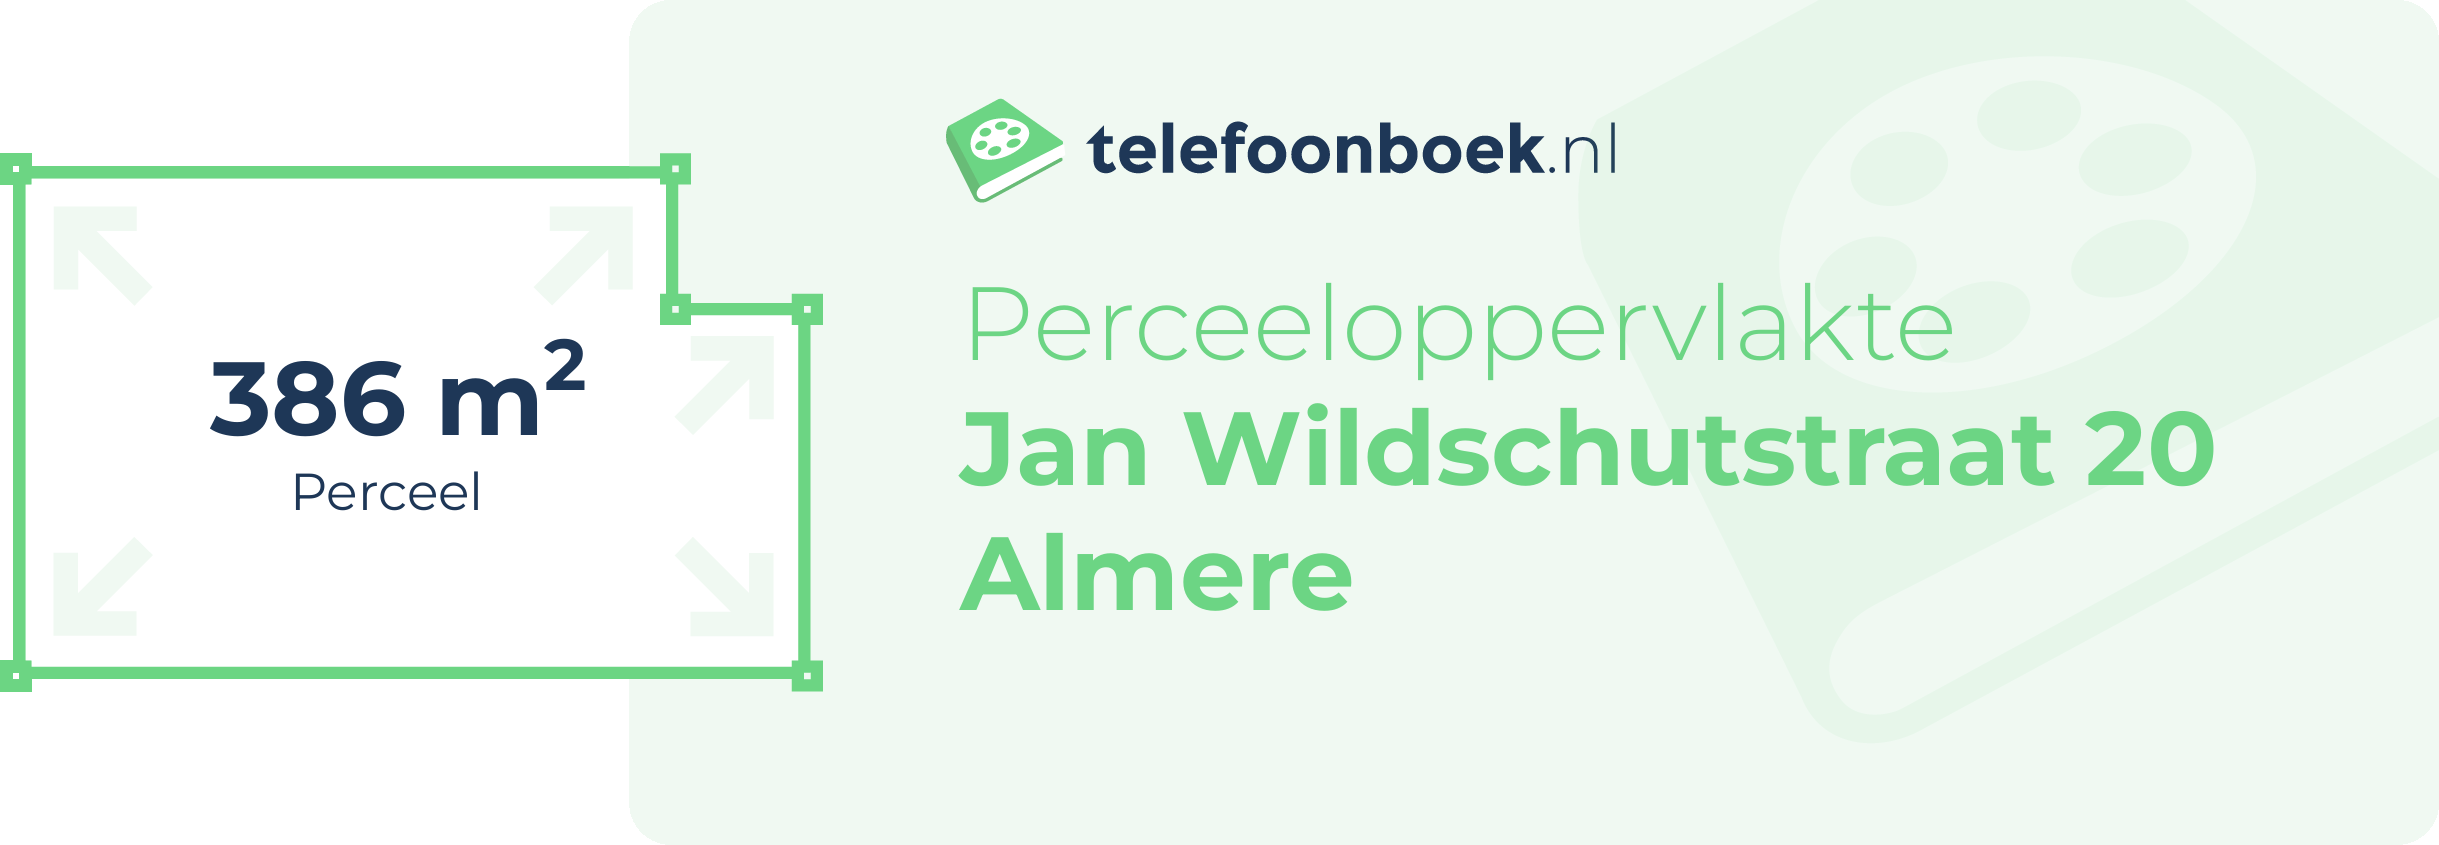 Perceeloppervlakte Jan Wildschutstraat 20 Almere